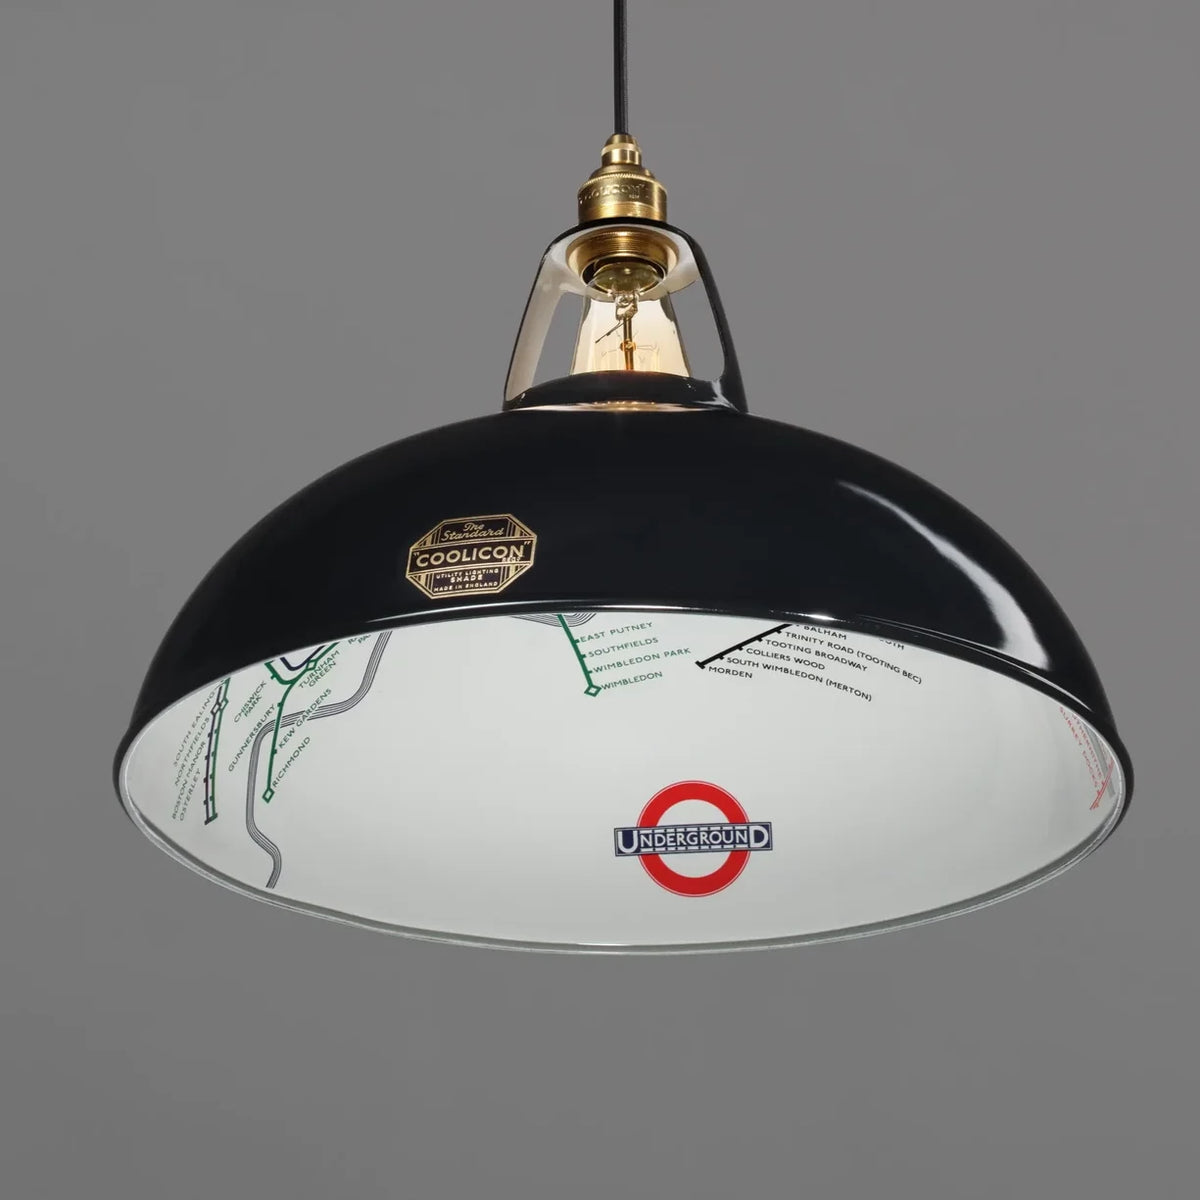 Coolicon Lampenschirm in jet black london underground, online kaufen